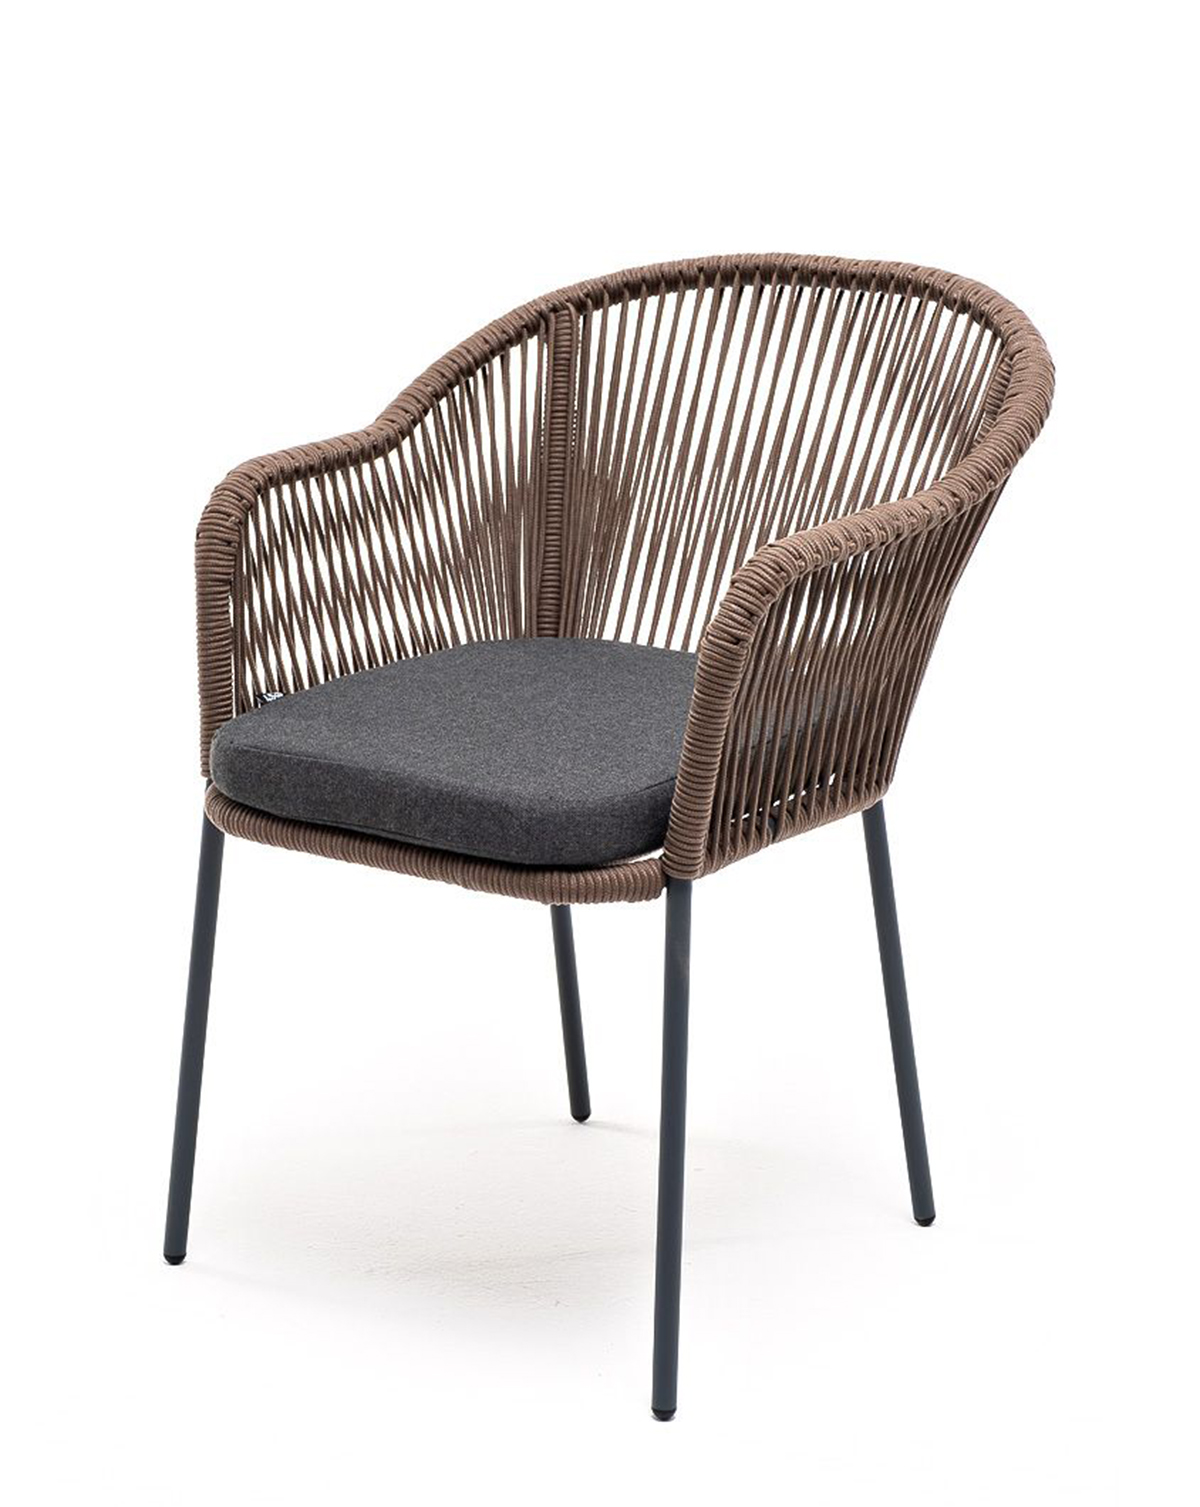 Плетеный стул из роупа Лион серо-коричневый плетеный стул из роупа лион коричневый ткань темно серая